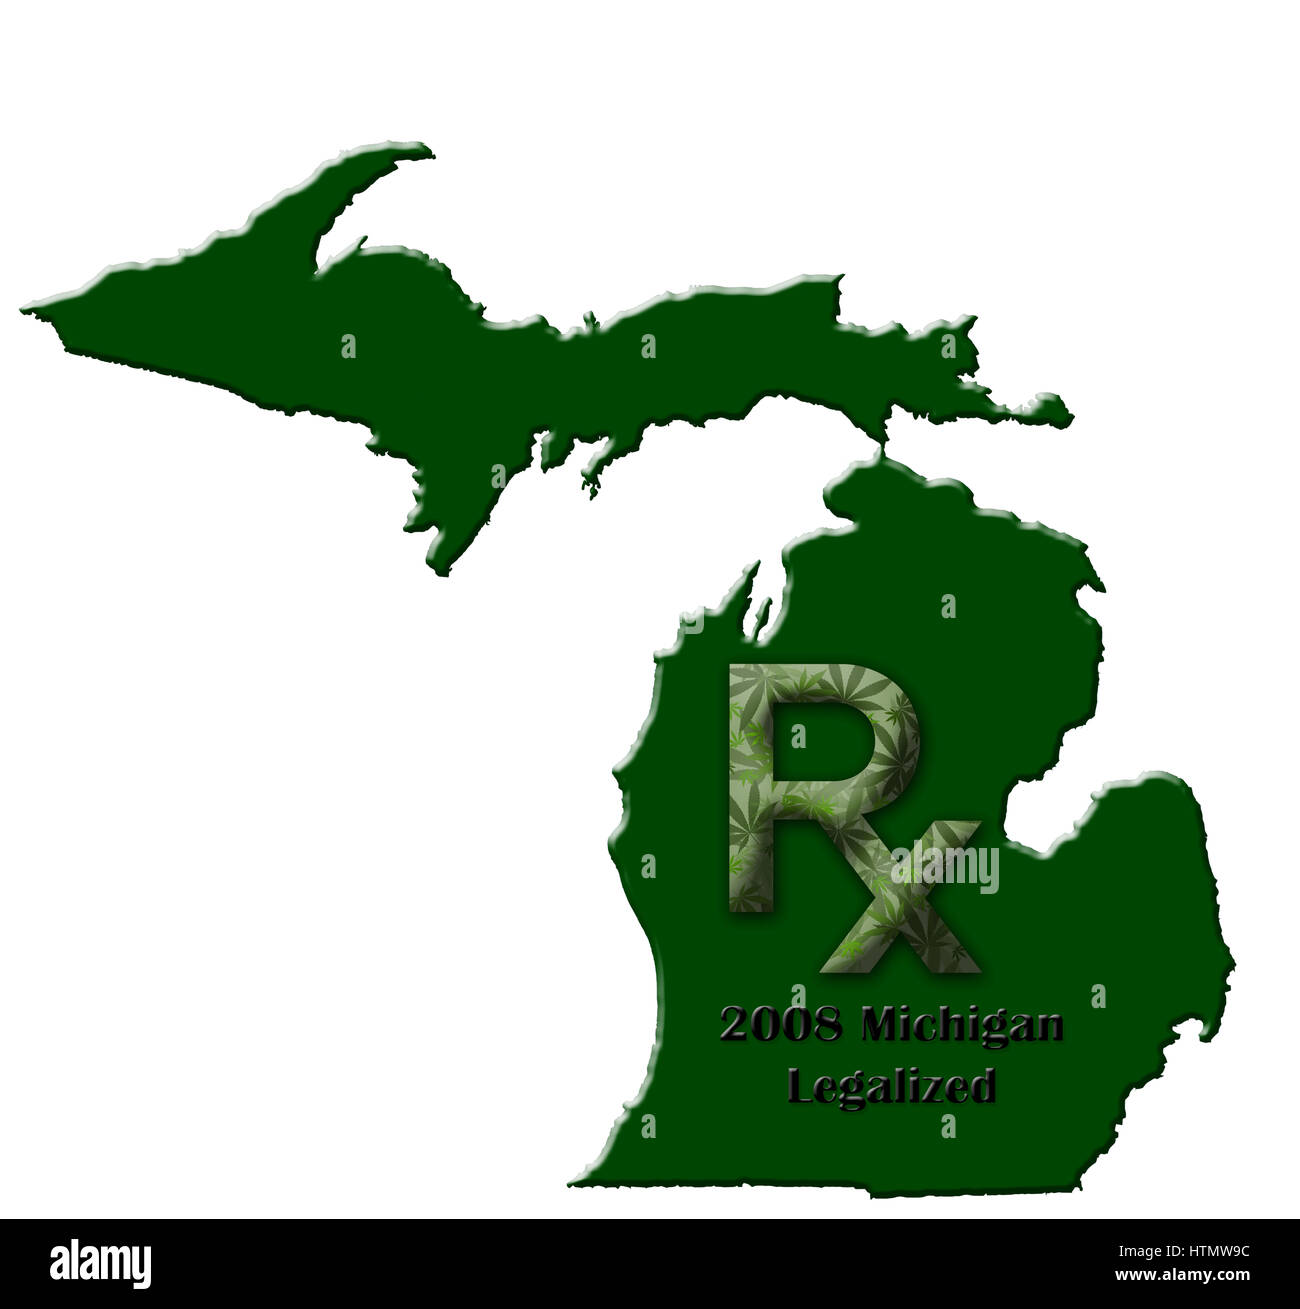 Carte de l'Etat du Michigan illustrant quand la marijuana médicale a été légalisé. Banque D'Images